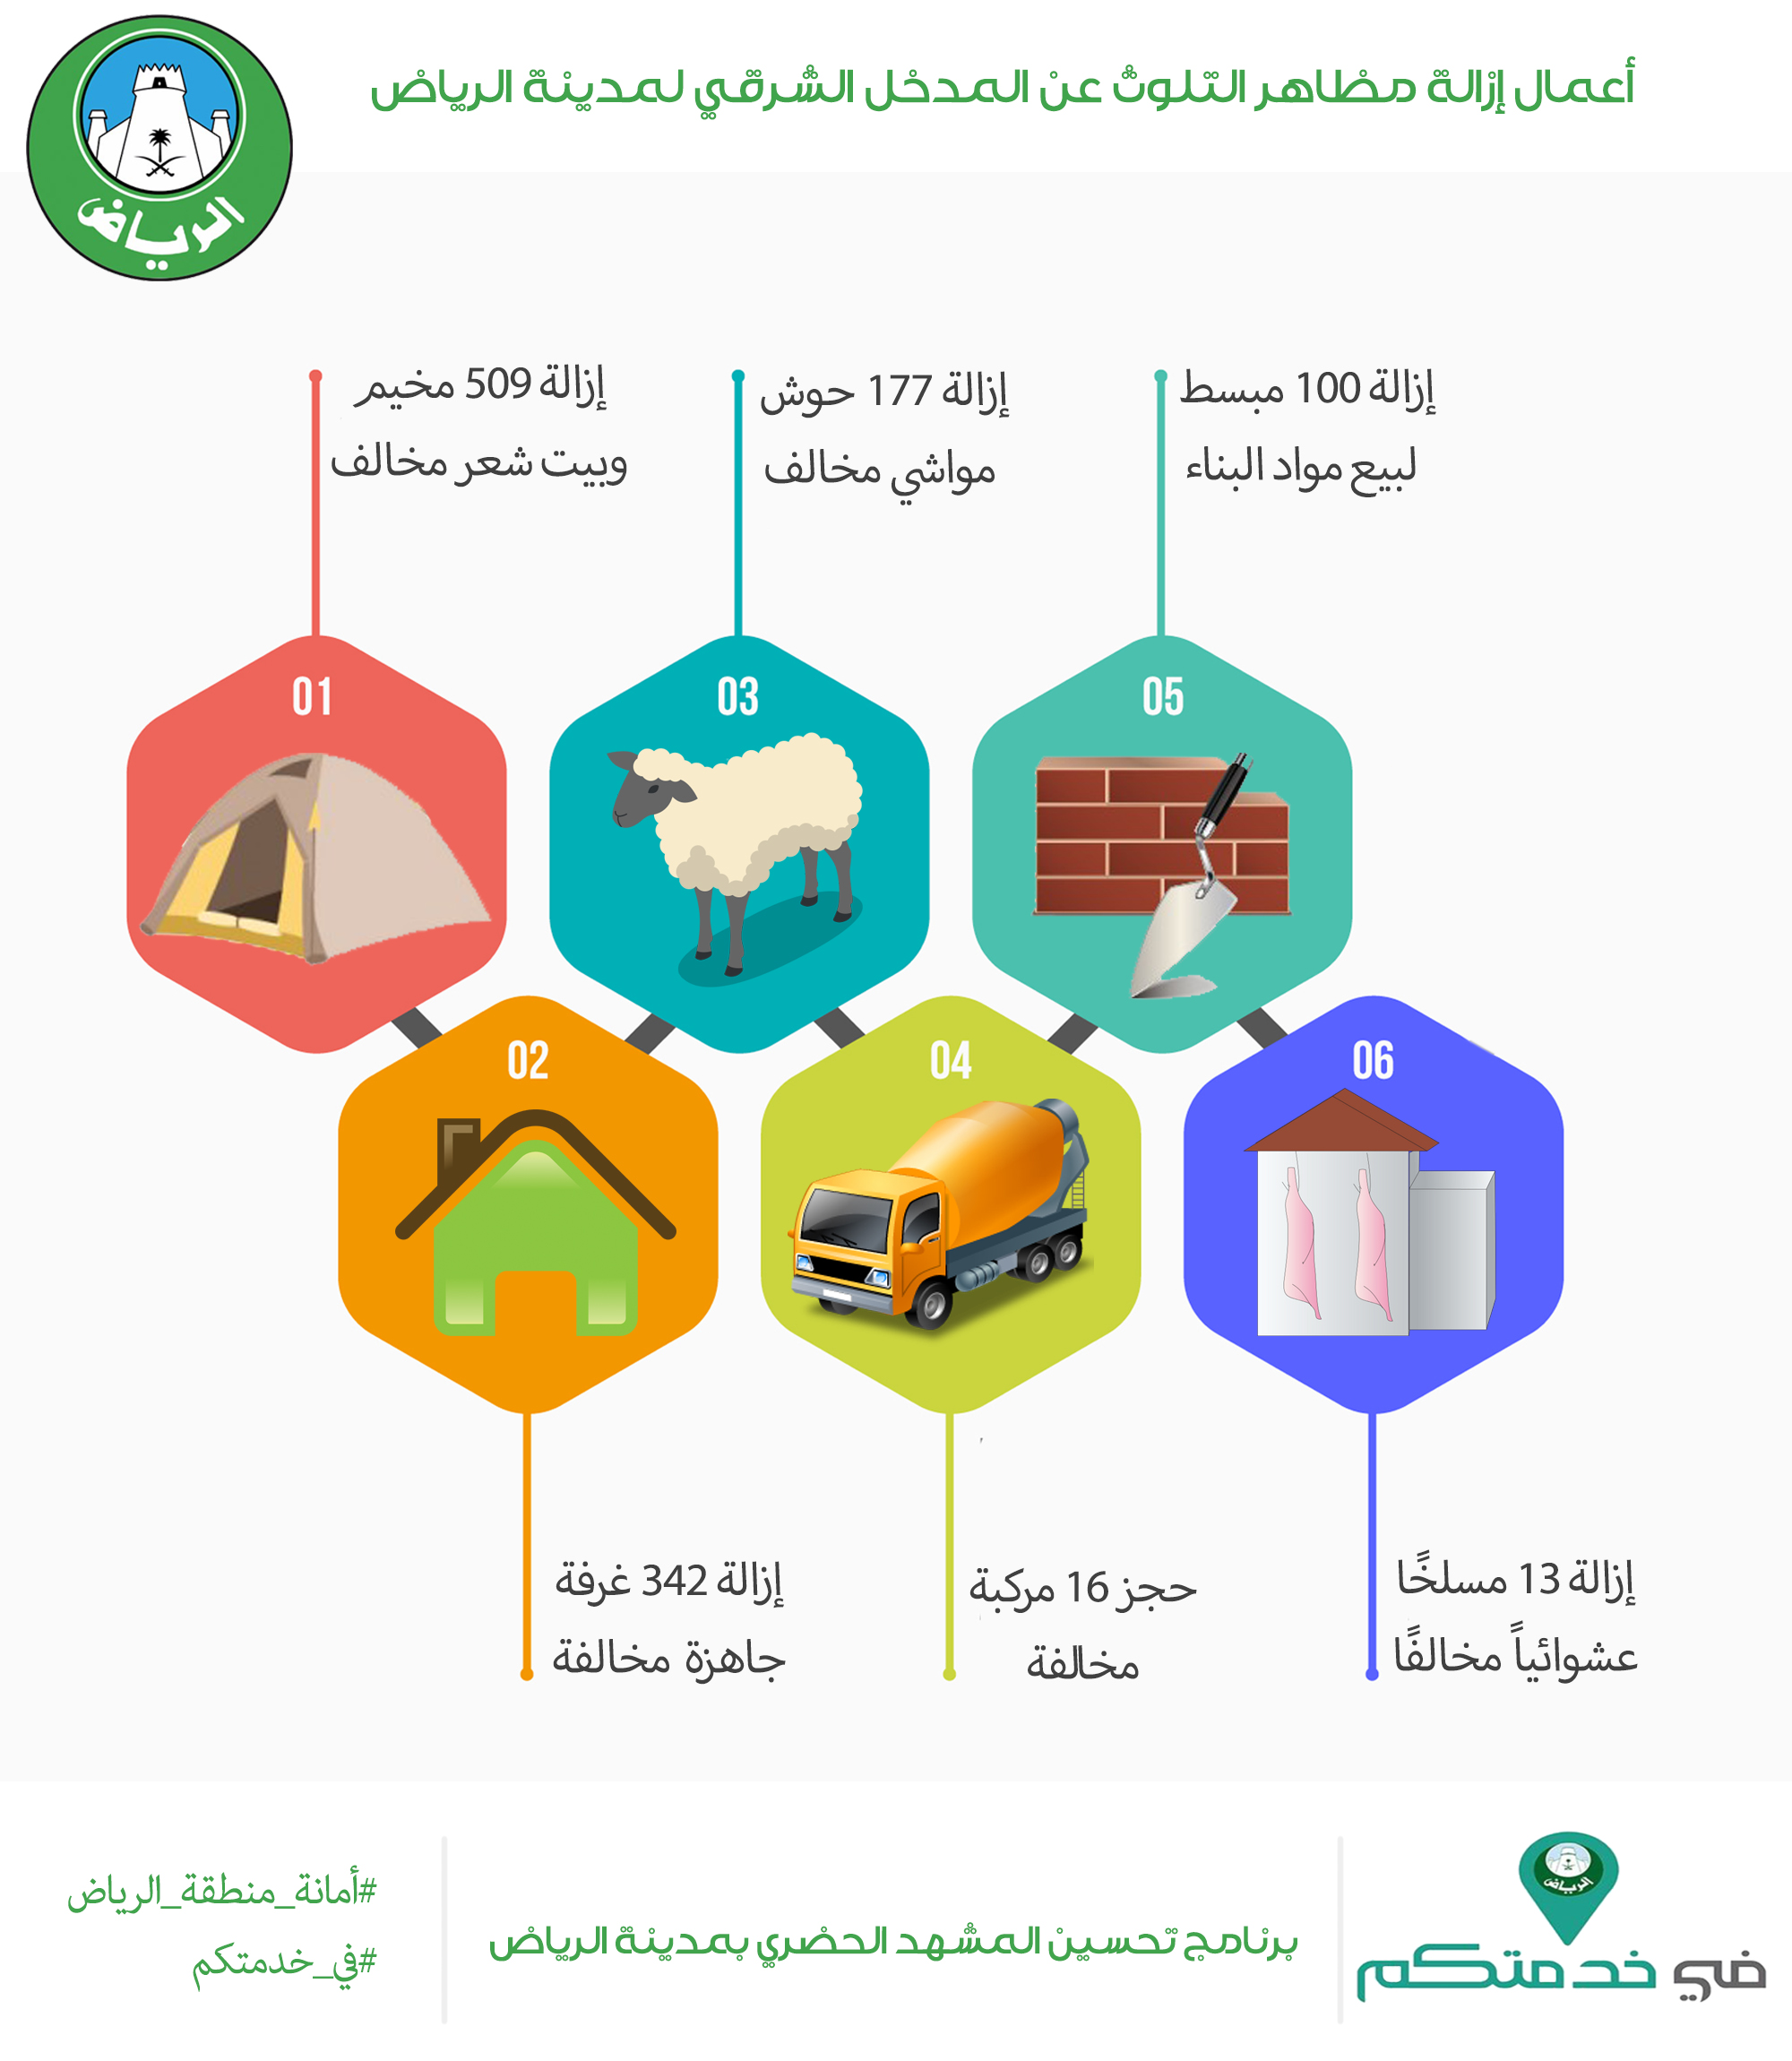 أمانة الرياض تزيل أكثر من 1100 عنصر ملوث عن المدخل الشرقي للعاصمة